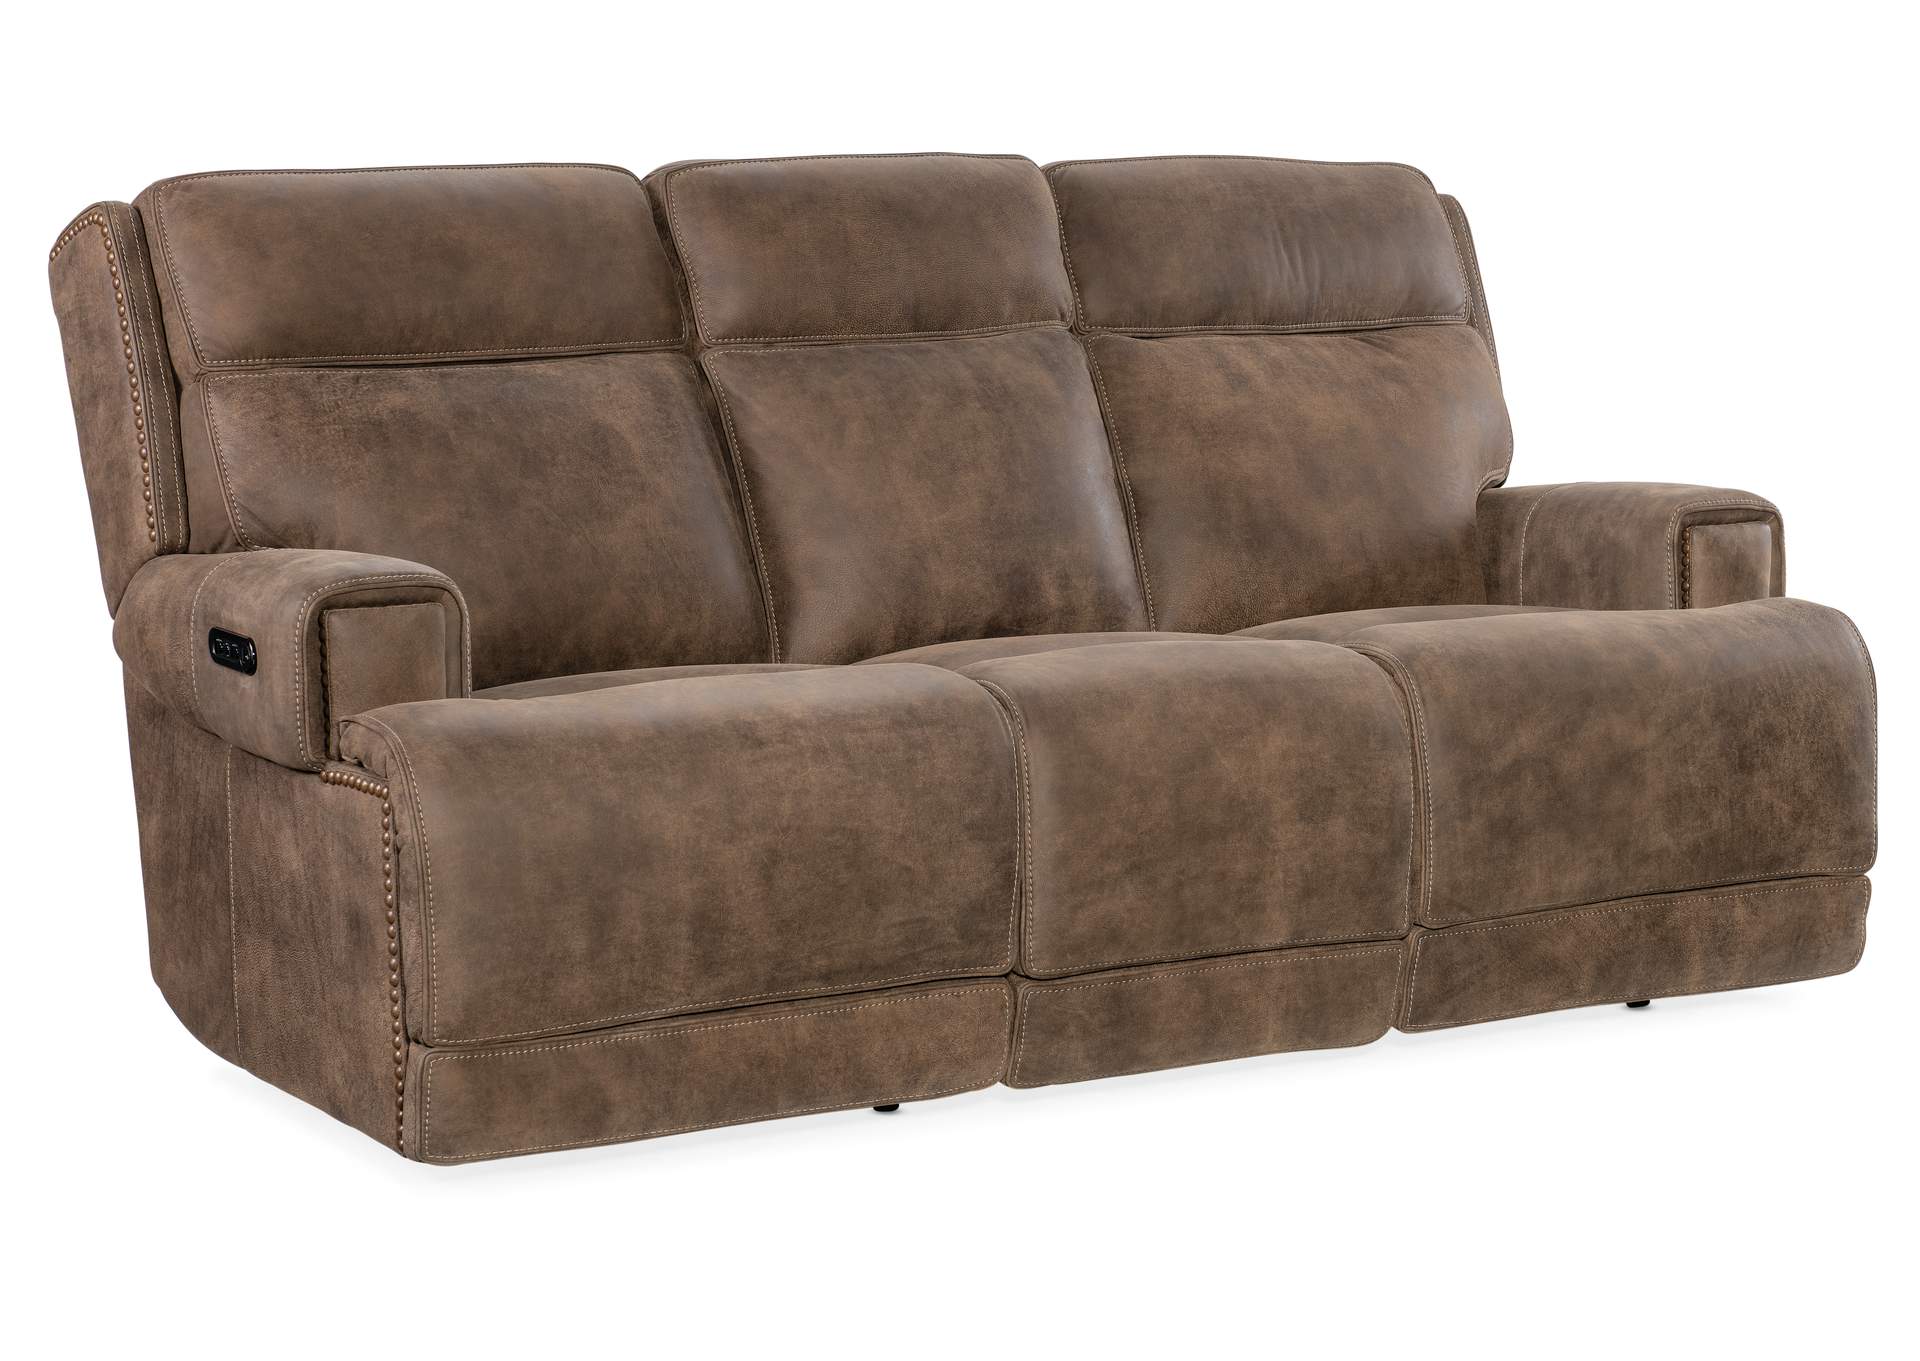 Wheeler Power Sofa With Power Headrest,Hooker Furniture